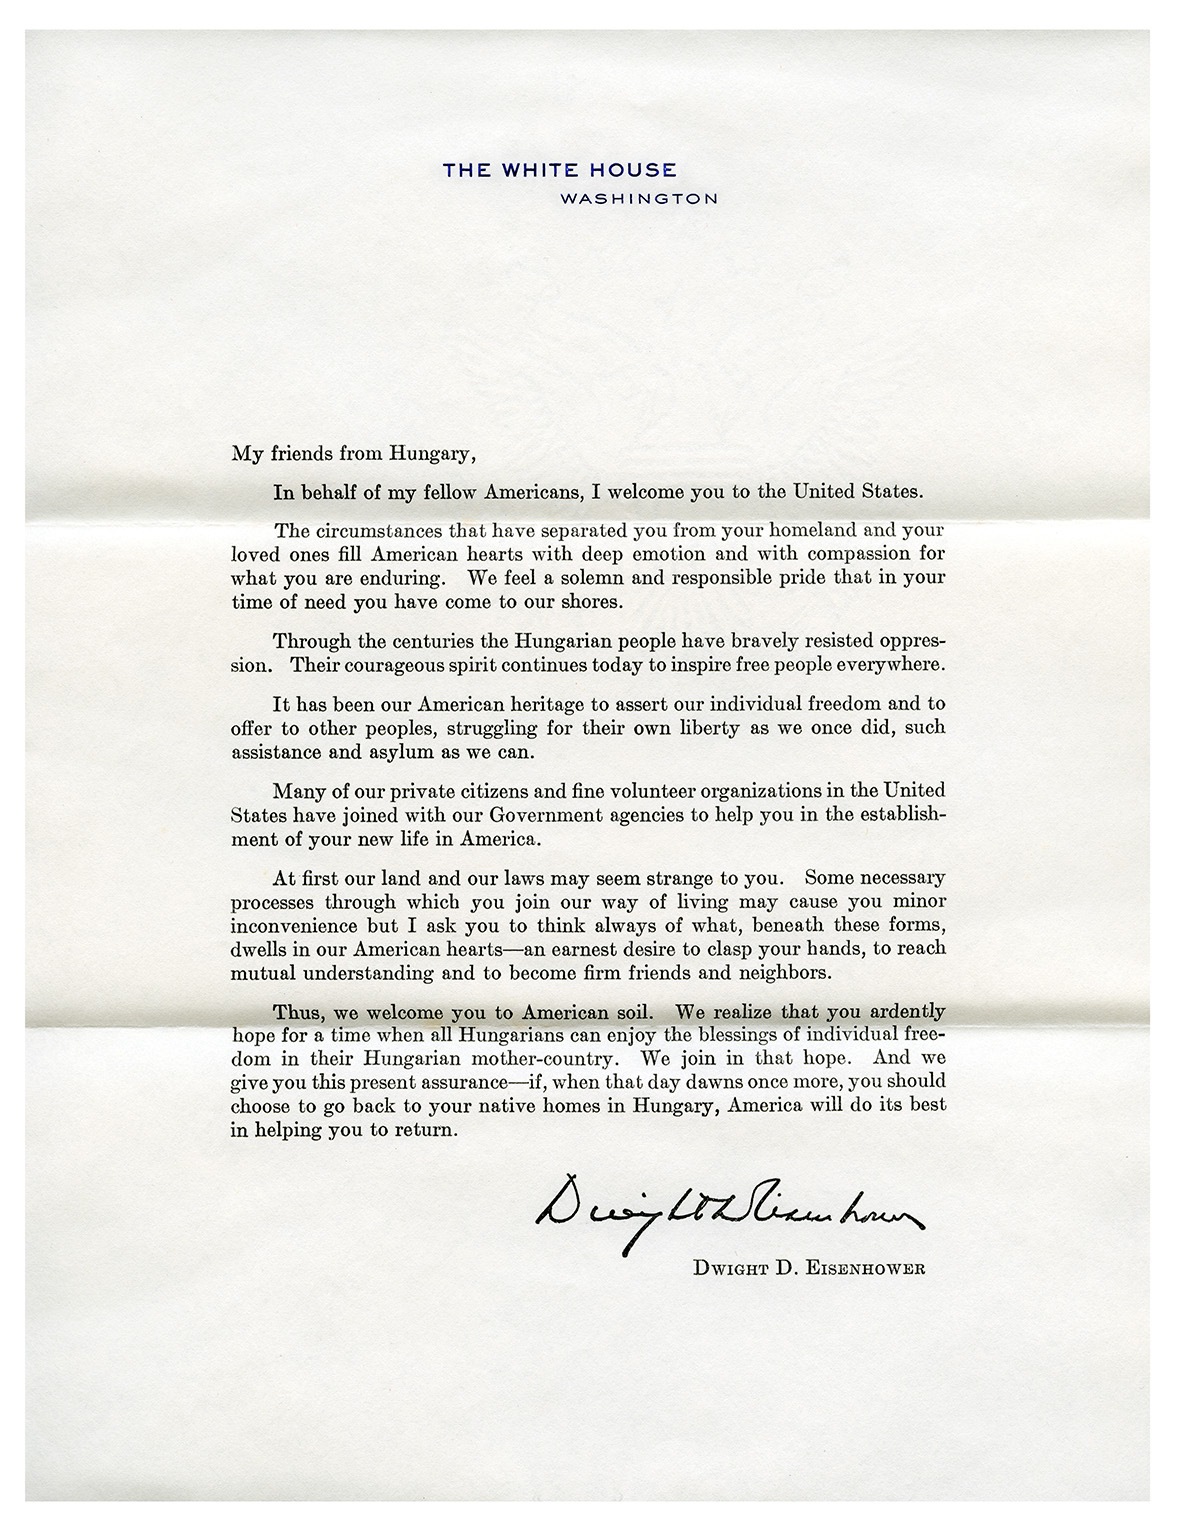 Eisenhower's Letter, 2011